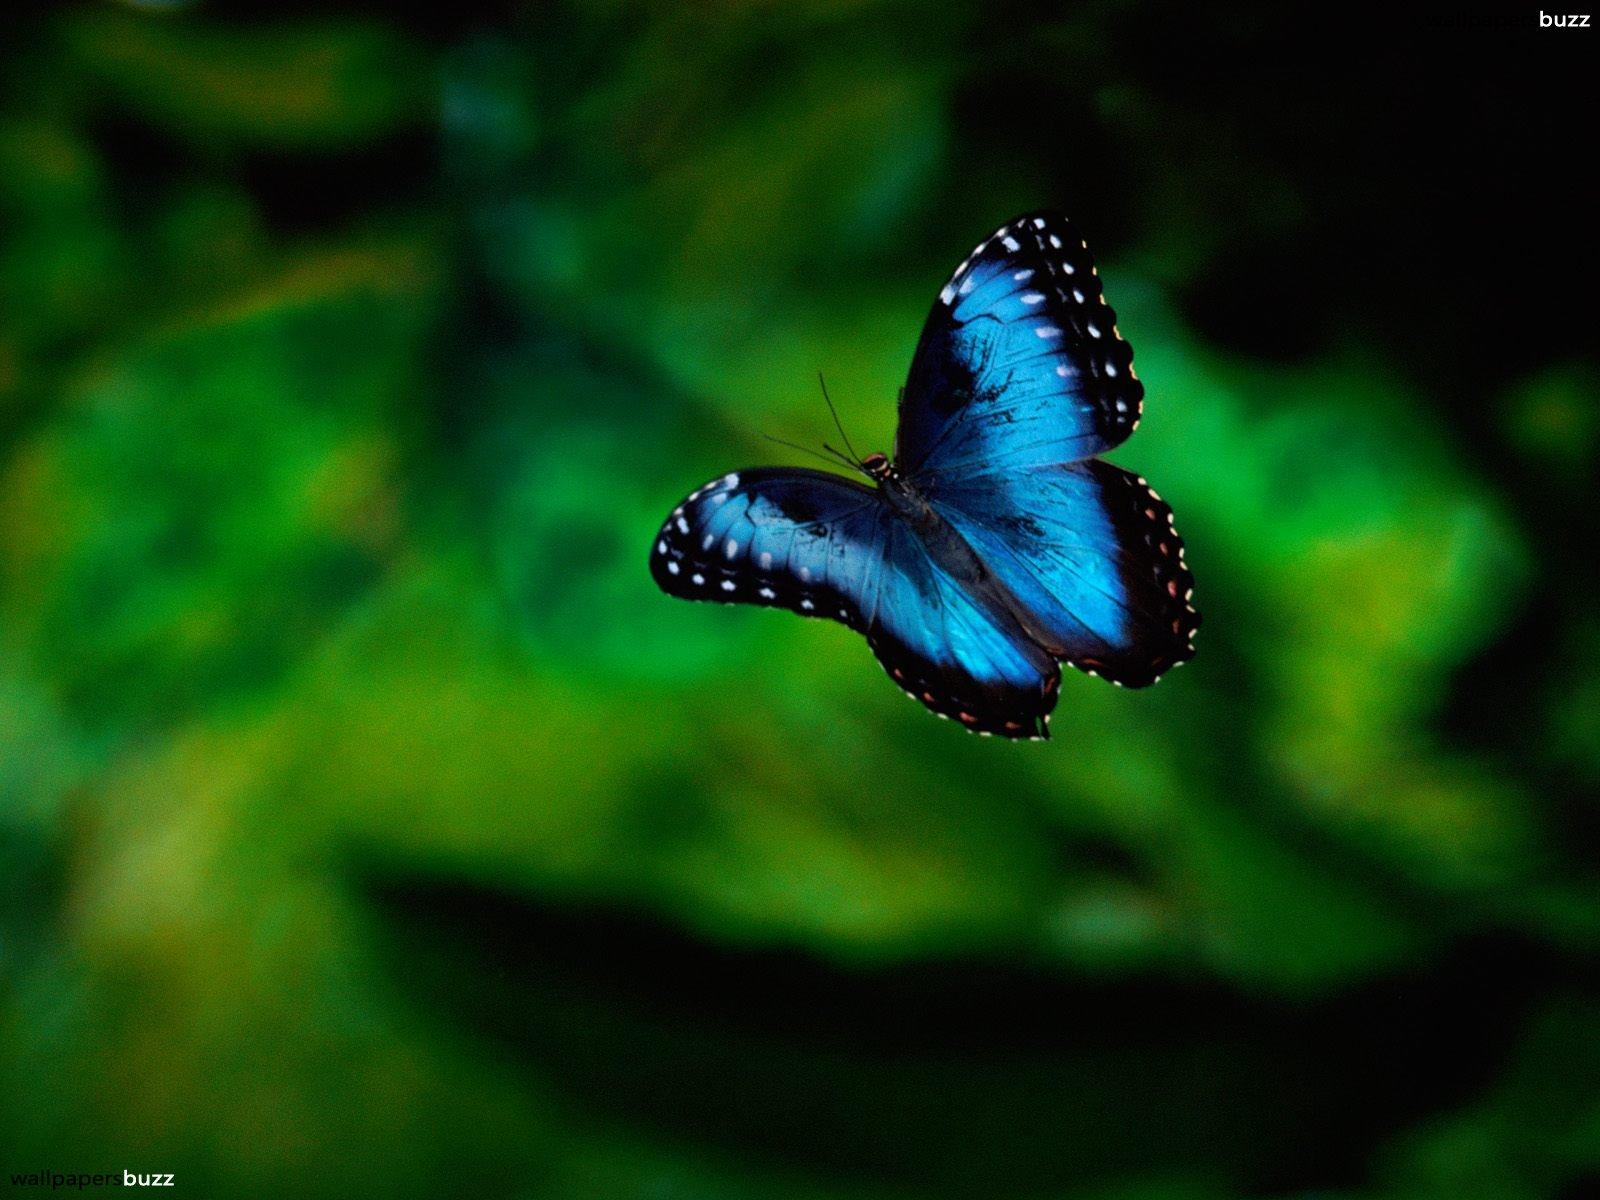 A flying blue butterfly HD Wallpaper